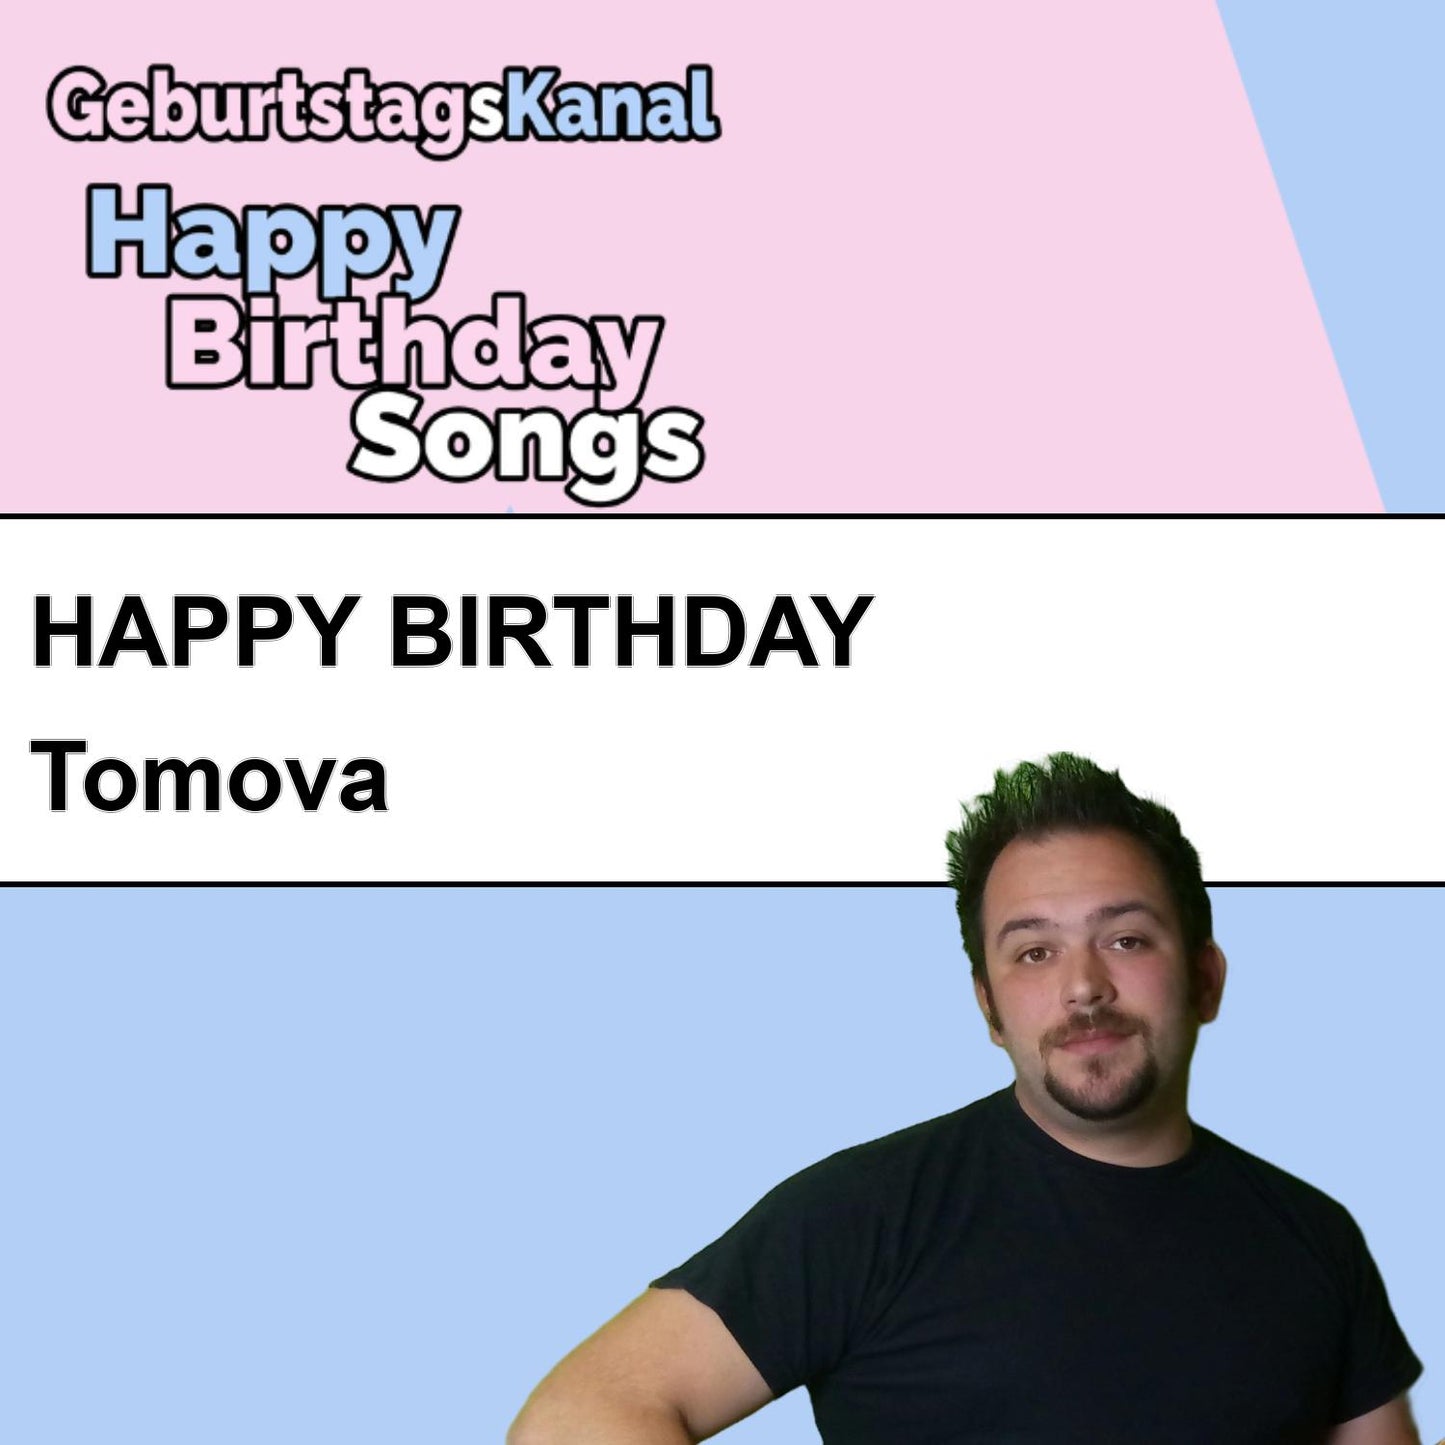 Produktbild Happy Birthday to you Tomova mit Wunschgrußbotschaft